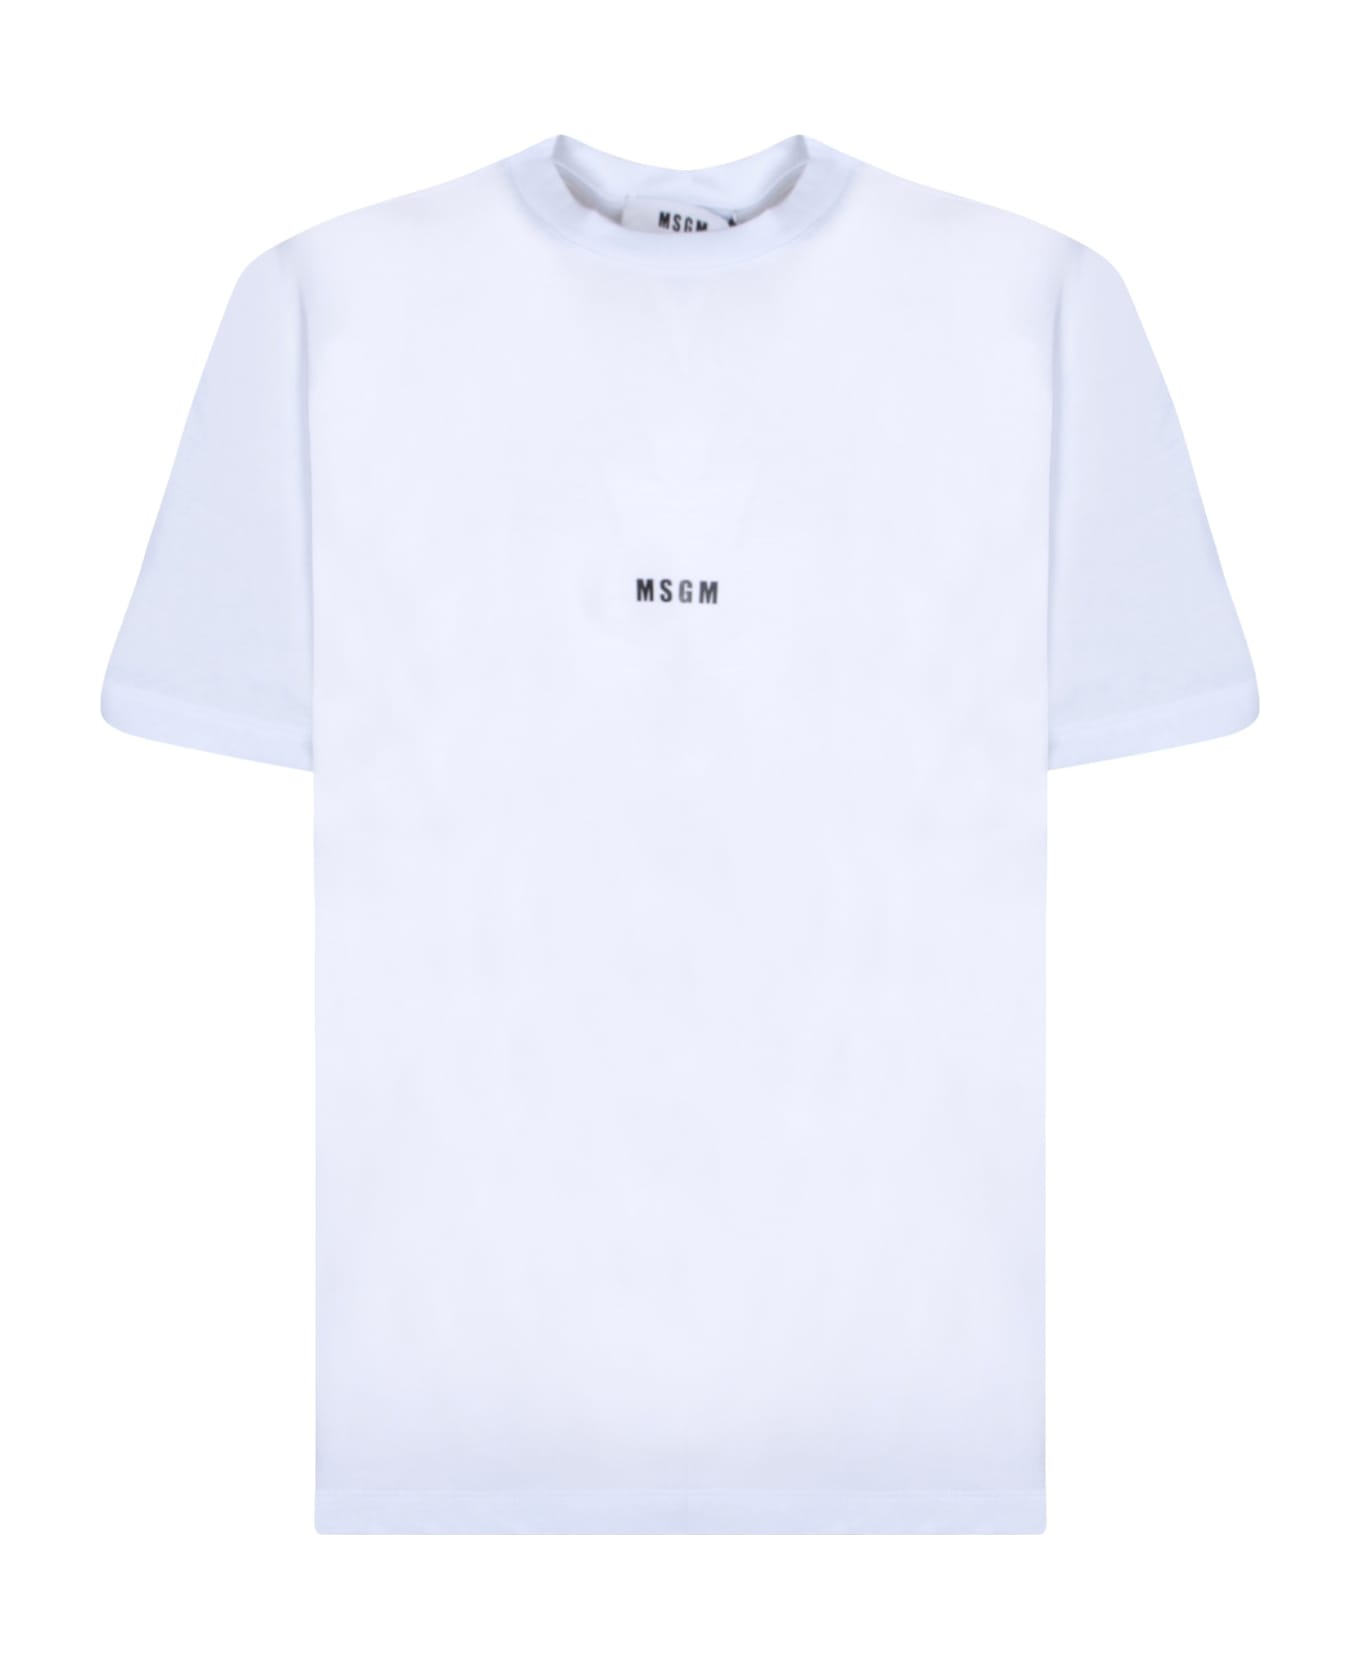 MSGM Micro Logo White T-shirt - White